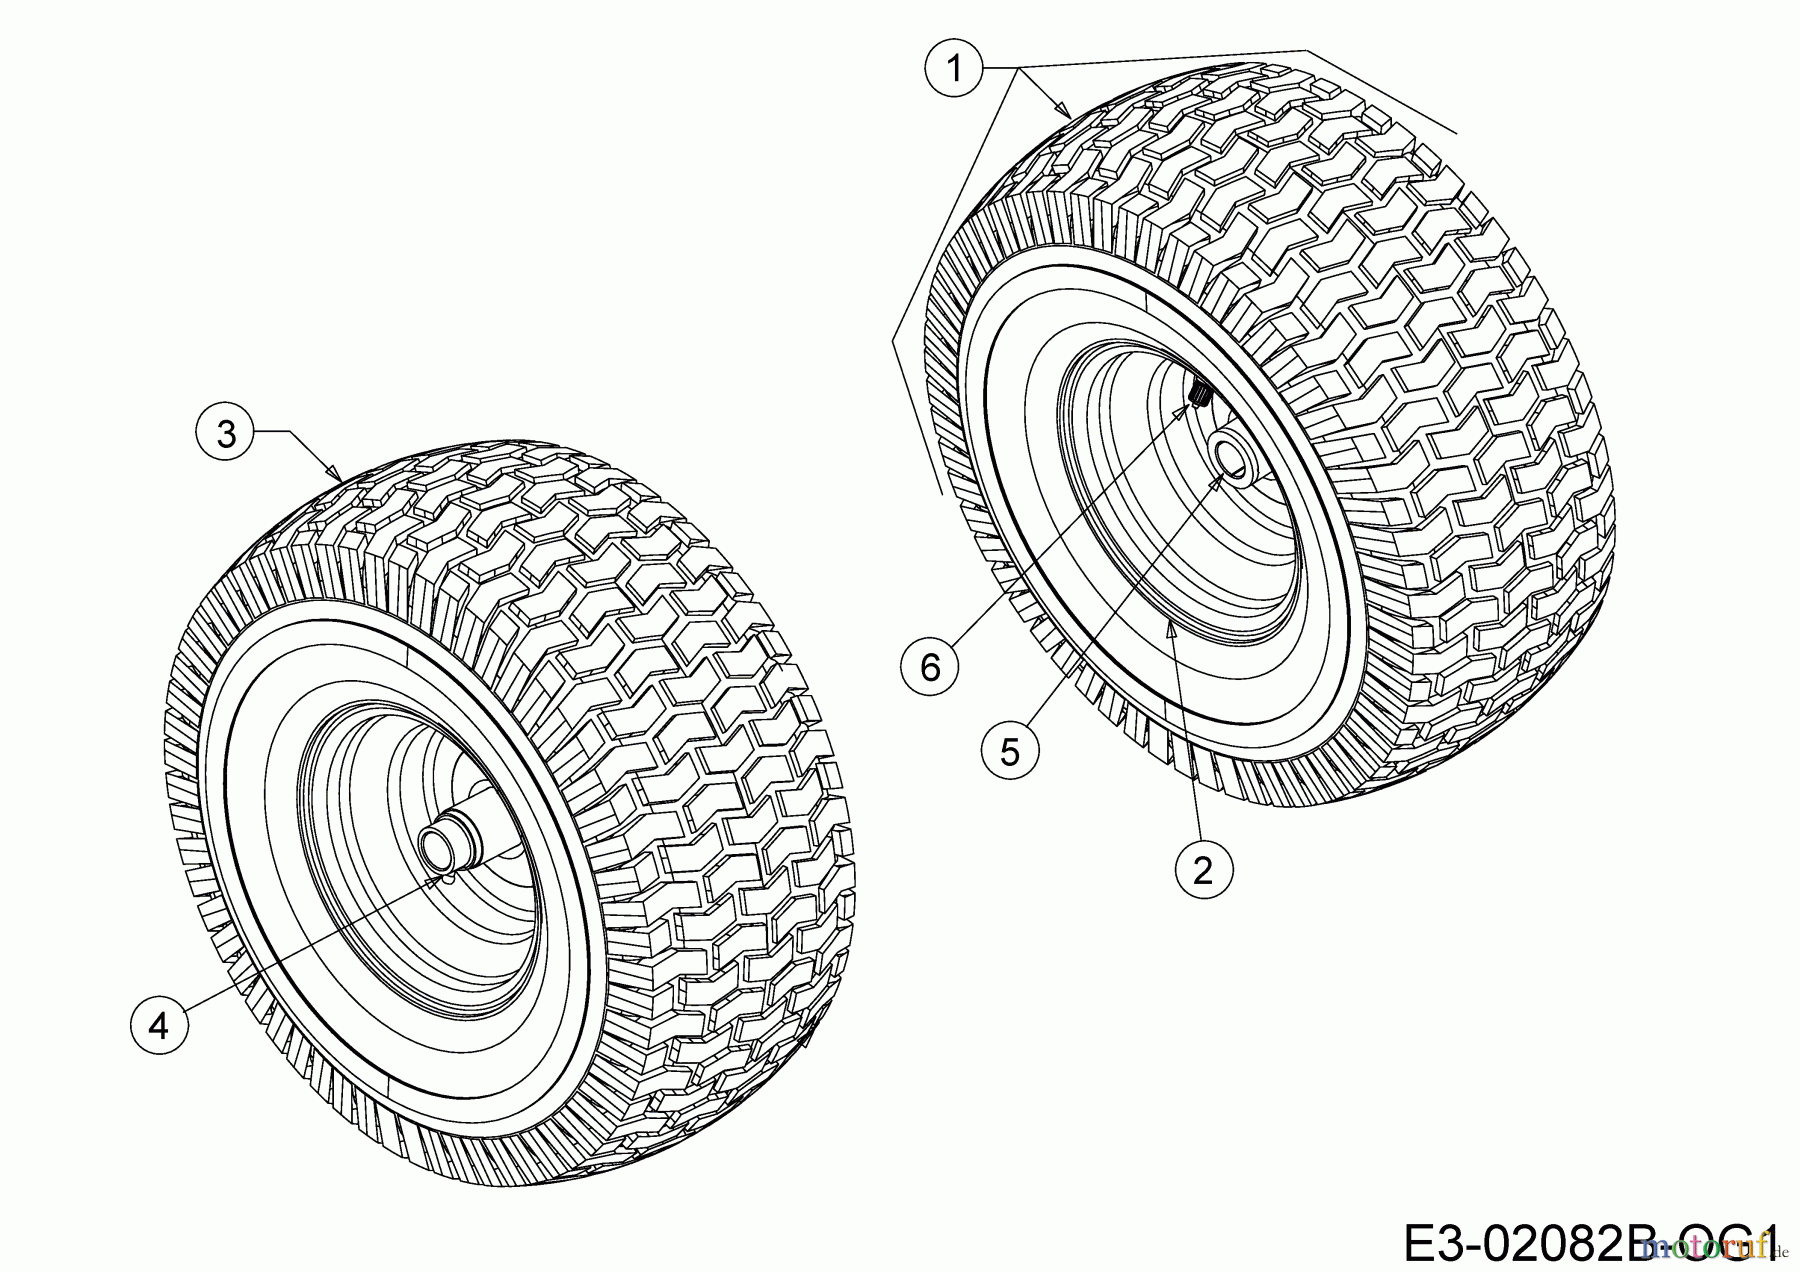  MTD Lawn tractors 115/92 B 13IH761E600  (2018) Front wheels 13x5